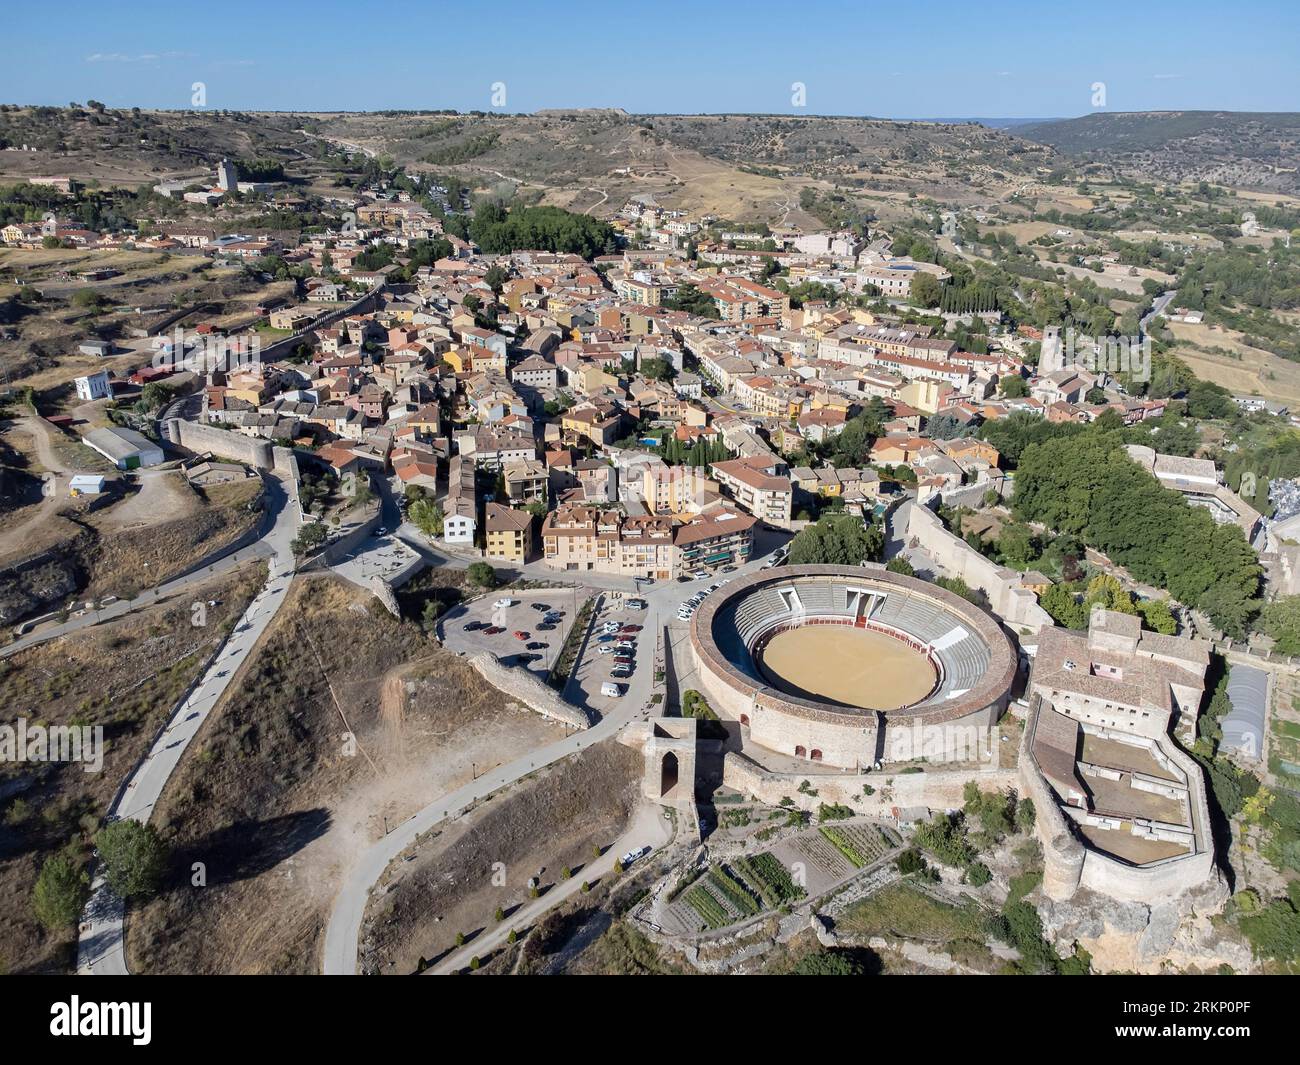 Immagine aerea del villaggio di Brihuega nella provincia di Guadalajara, Spagna, con l'arena la Muralla in primo piano e le sue mura circostanti Foto Stock